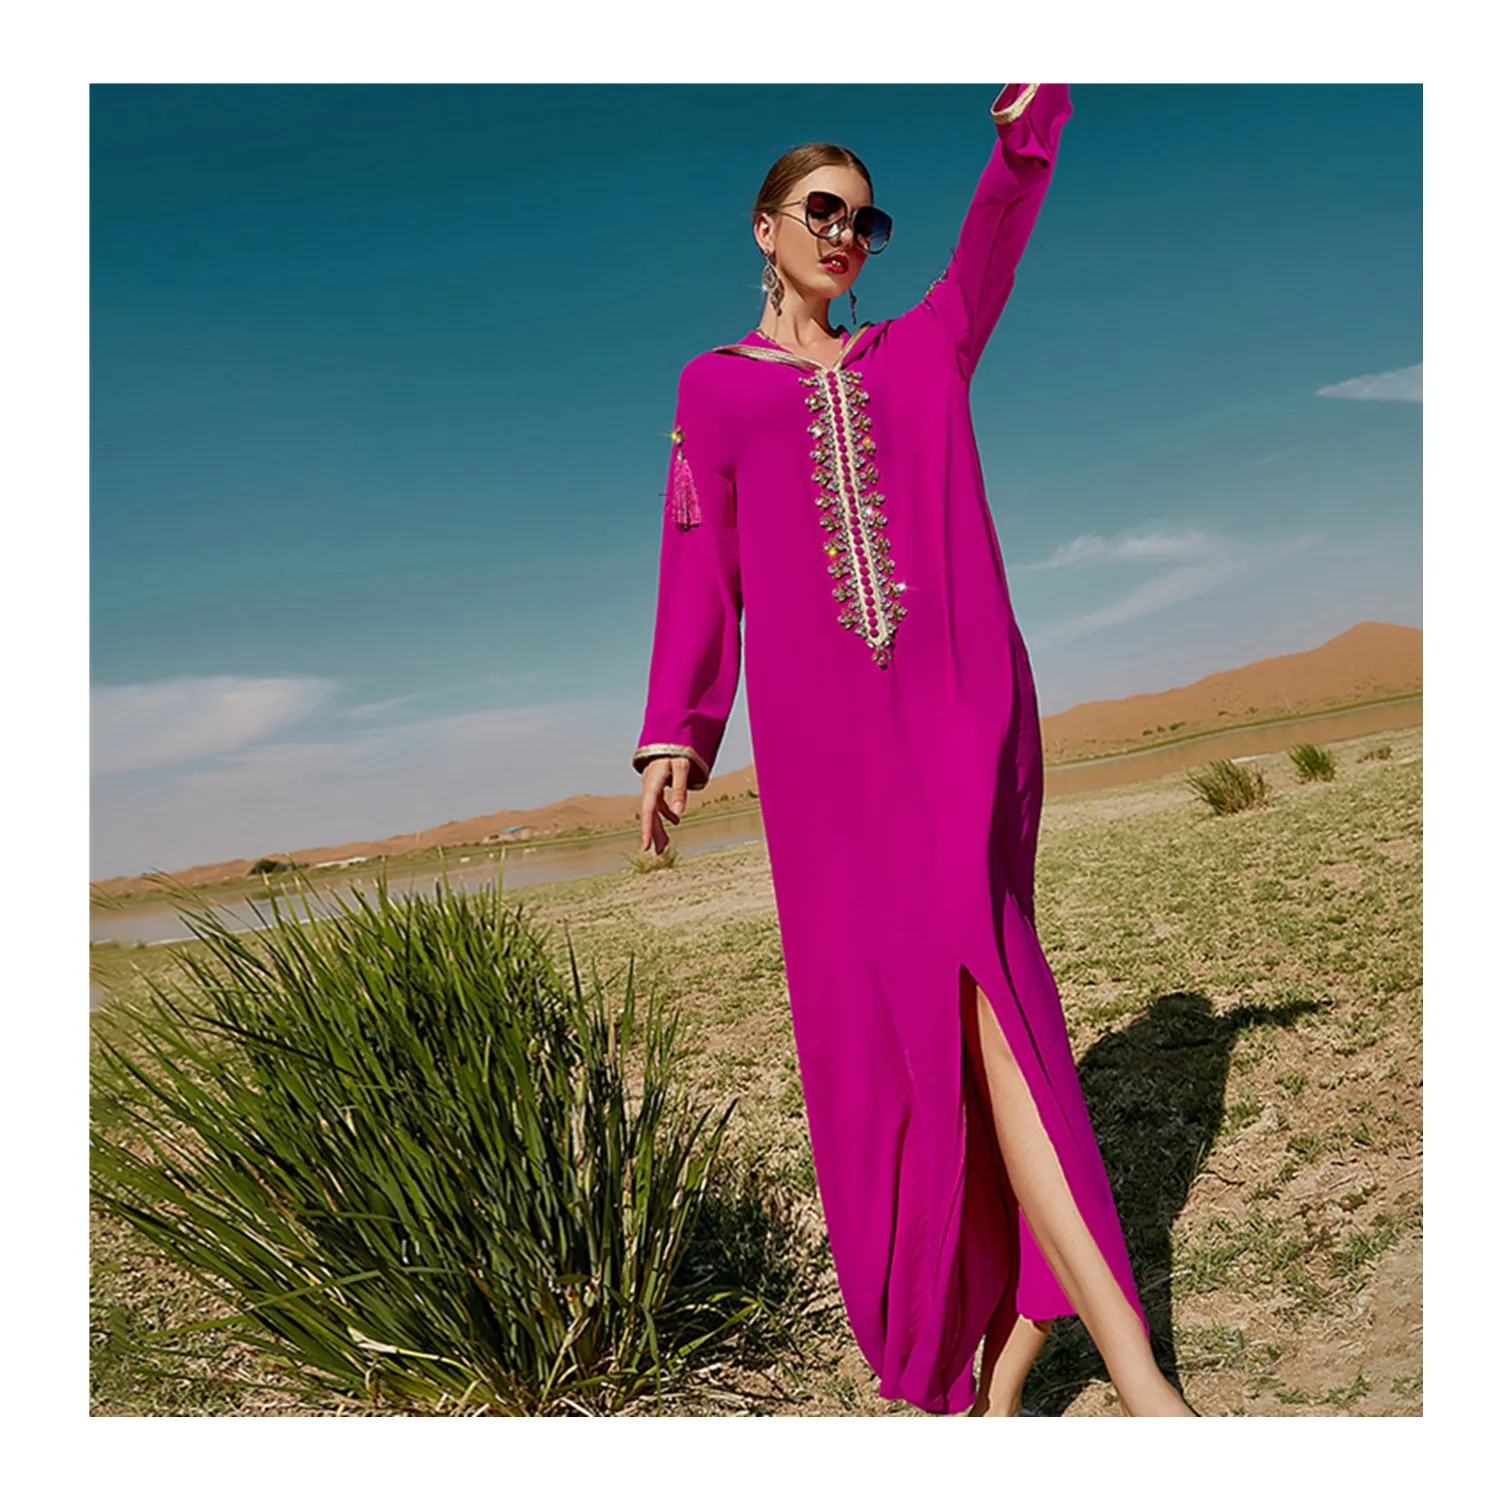 SIPO Marok kanis cher Stil Kaftan Abaya Islamische Kleidung Dubai 2022 Polyester Rose Rot A-Linie Schnitt Maxi kleid Mit Hand genähten Strass steinen